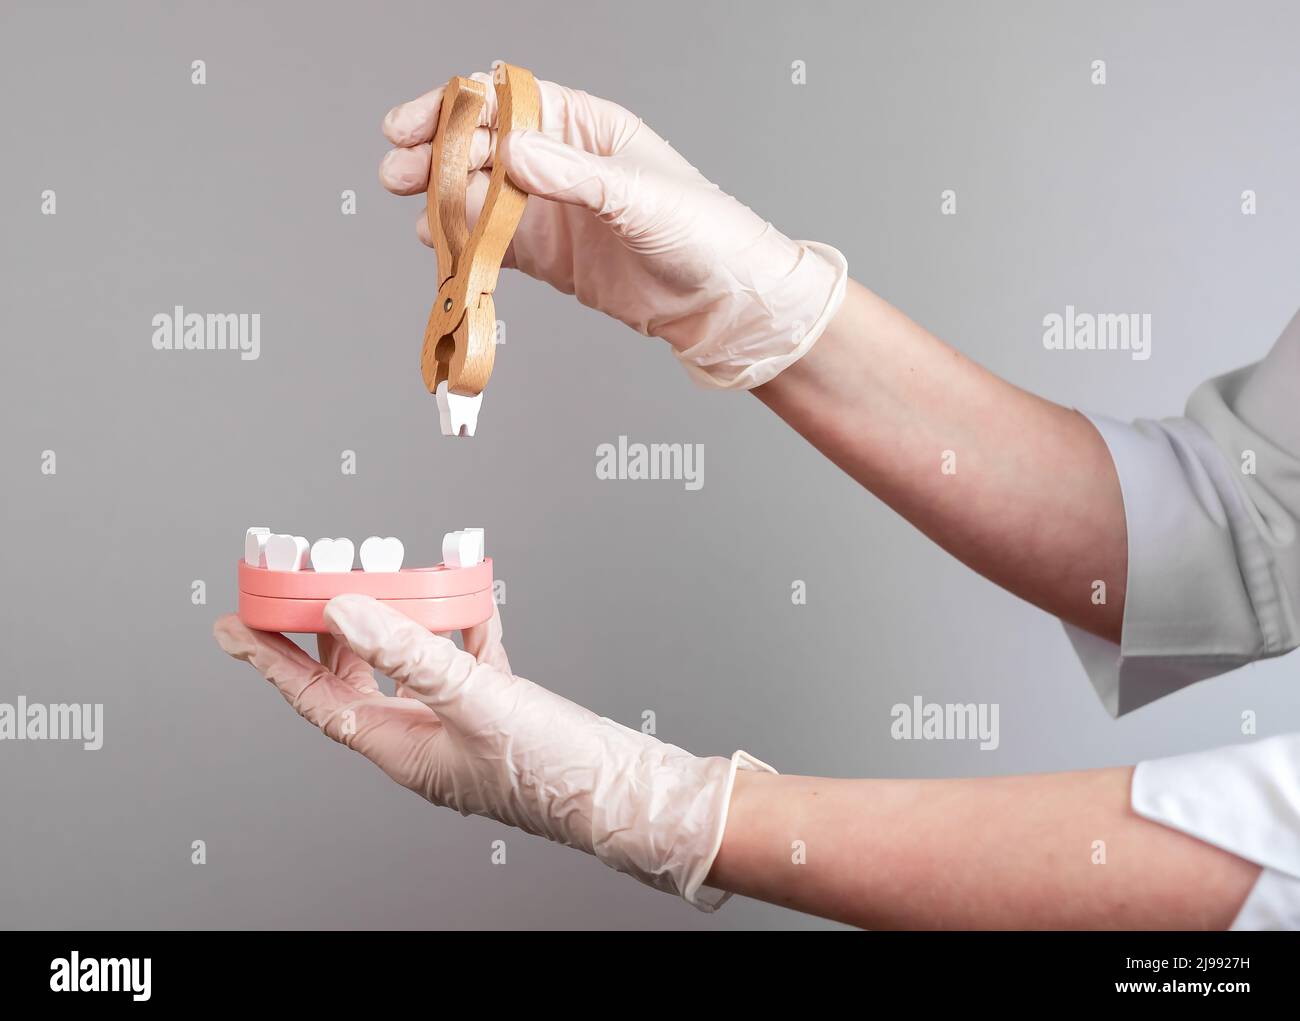 Le mani del dentista tirano il dente con le pinze fuori dal modello della mandibola. Rimozione dei denti, odontoiatria concetto. Trattamento delle malattie dentali. Foto di alta qualità Foto Stock